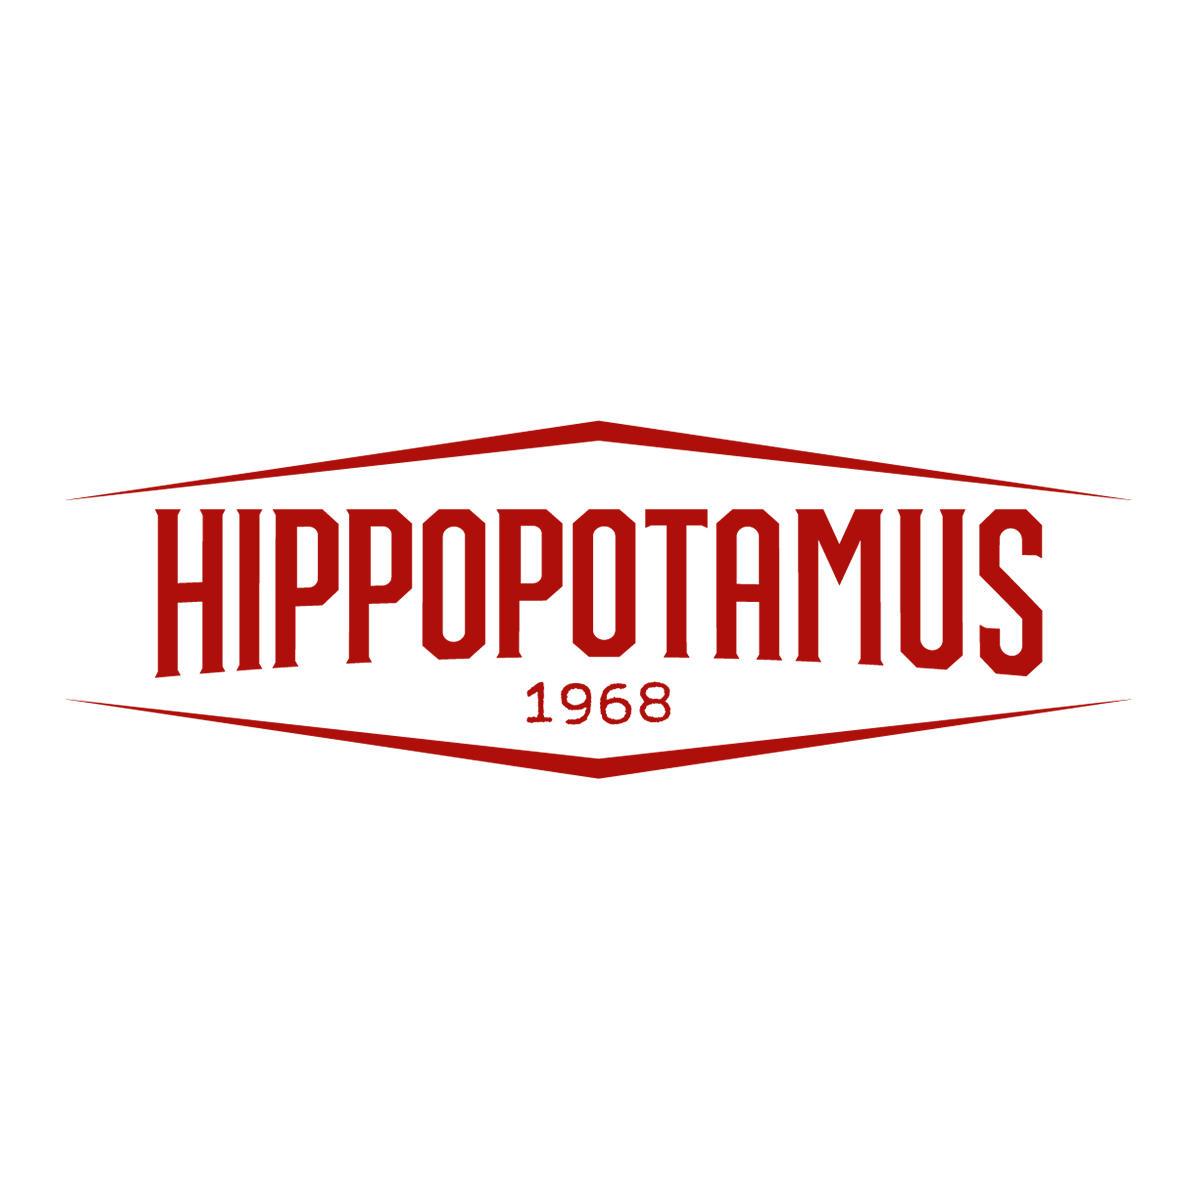 Hippopotamus Steakhouse Saint Thibault Des Vignes